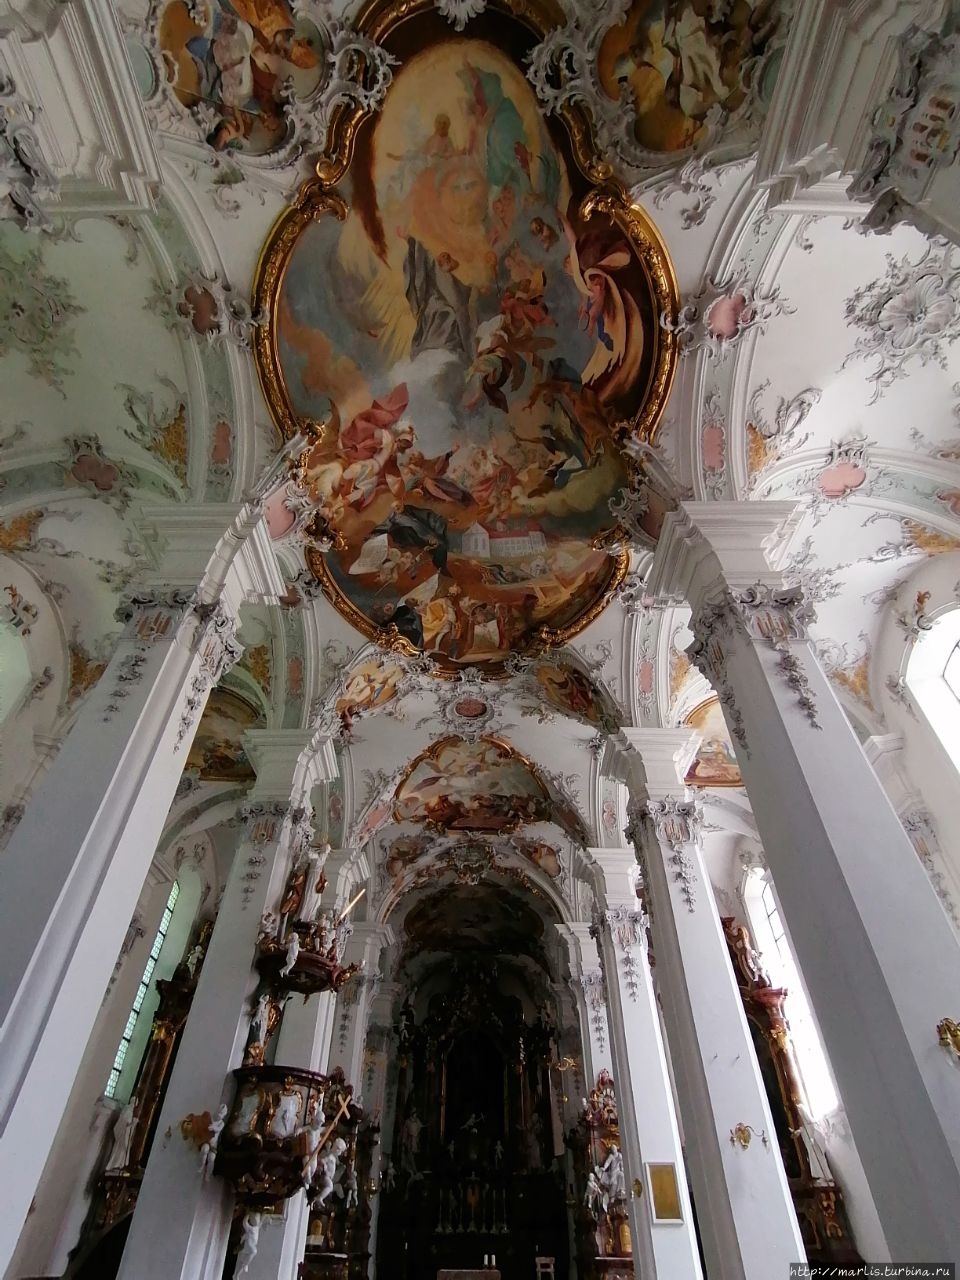 Монастырская церковь святых Георга и Якоба Исни-им-Алльгой, Германия